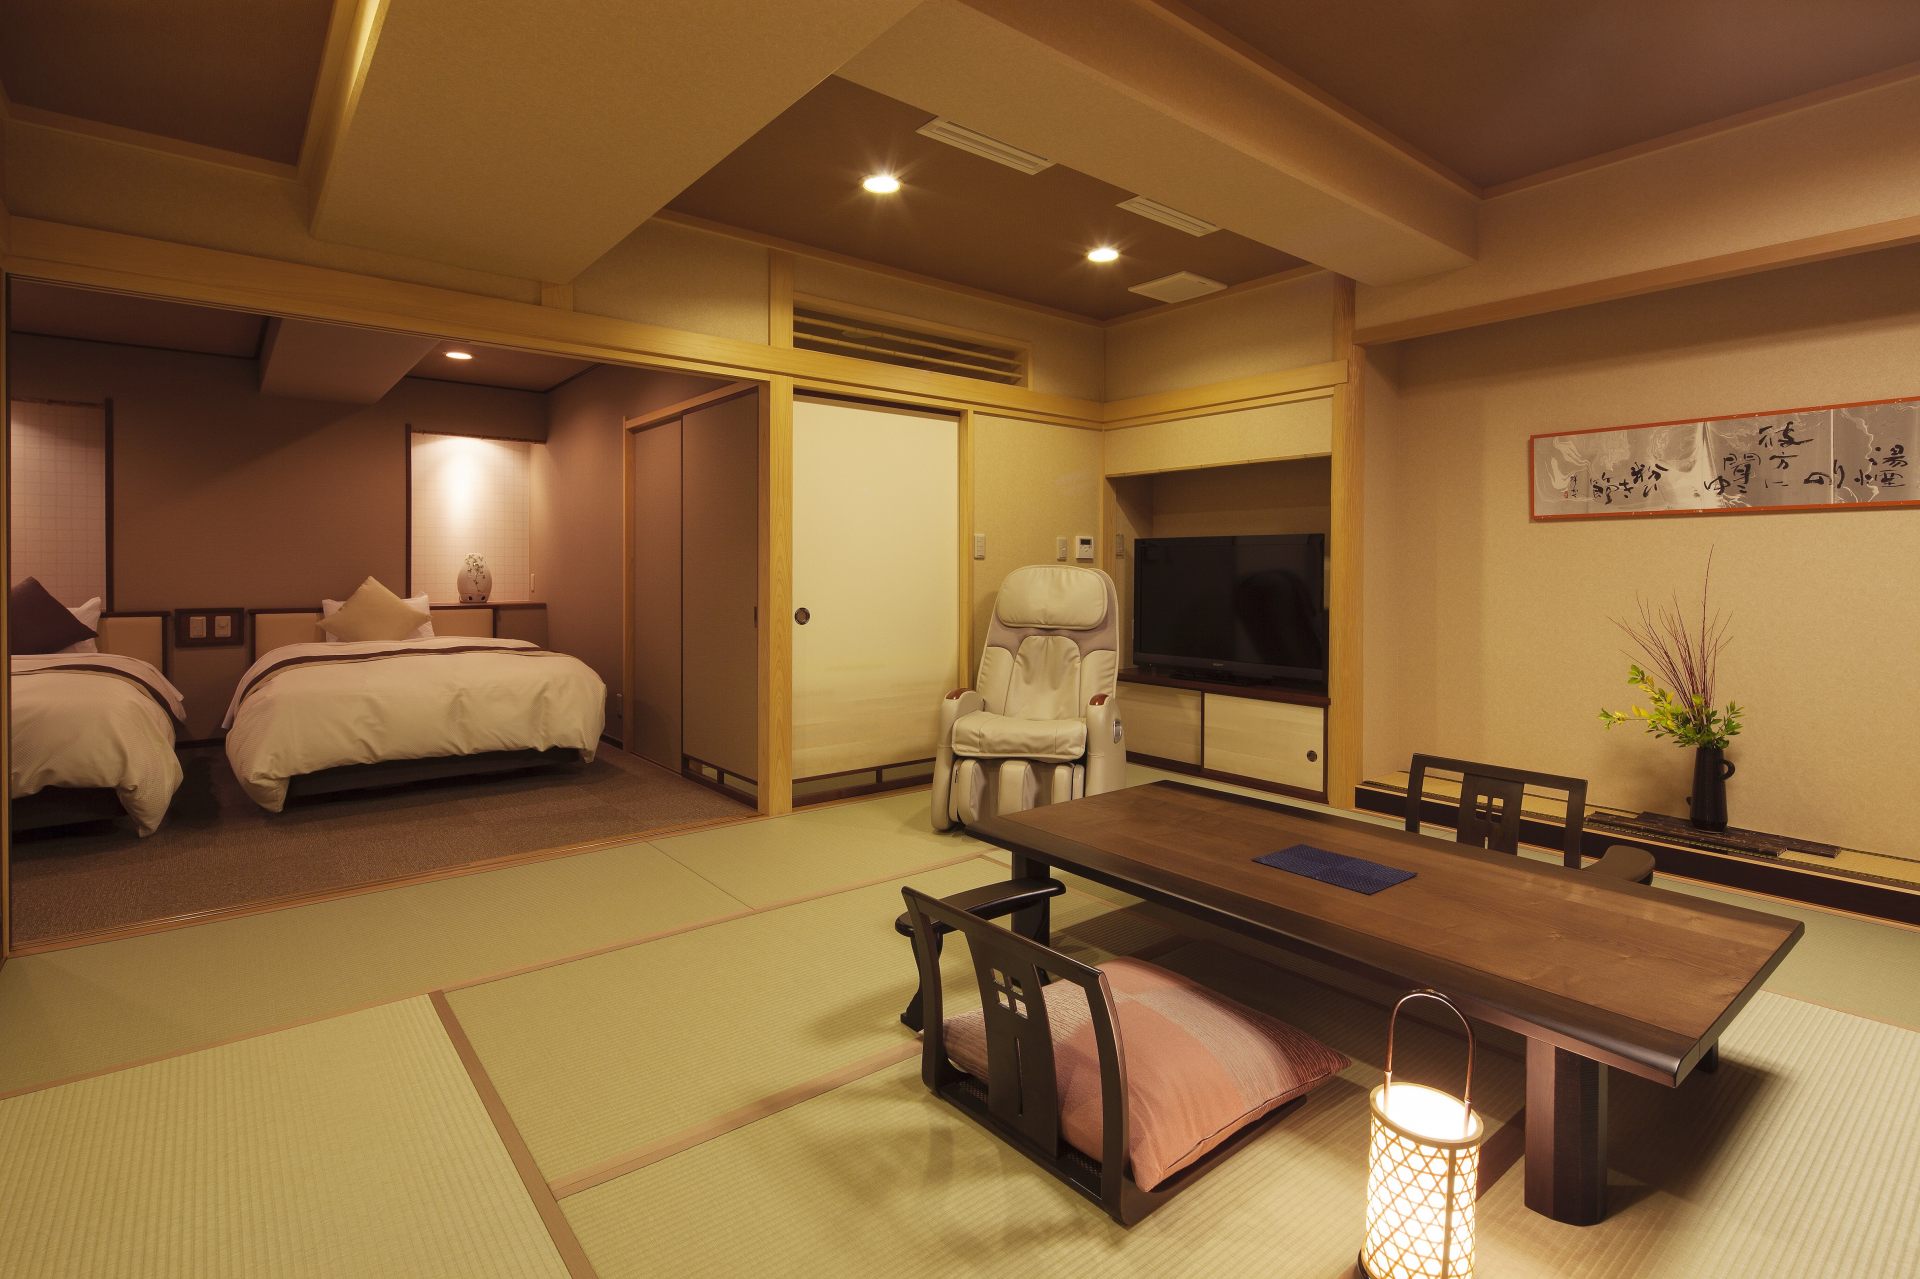 和室と洋室を備える和モダンな特別室は、グループ旅行にぴったり。